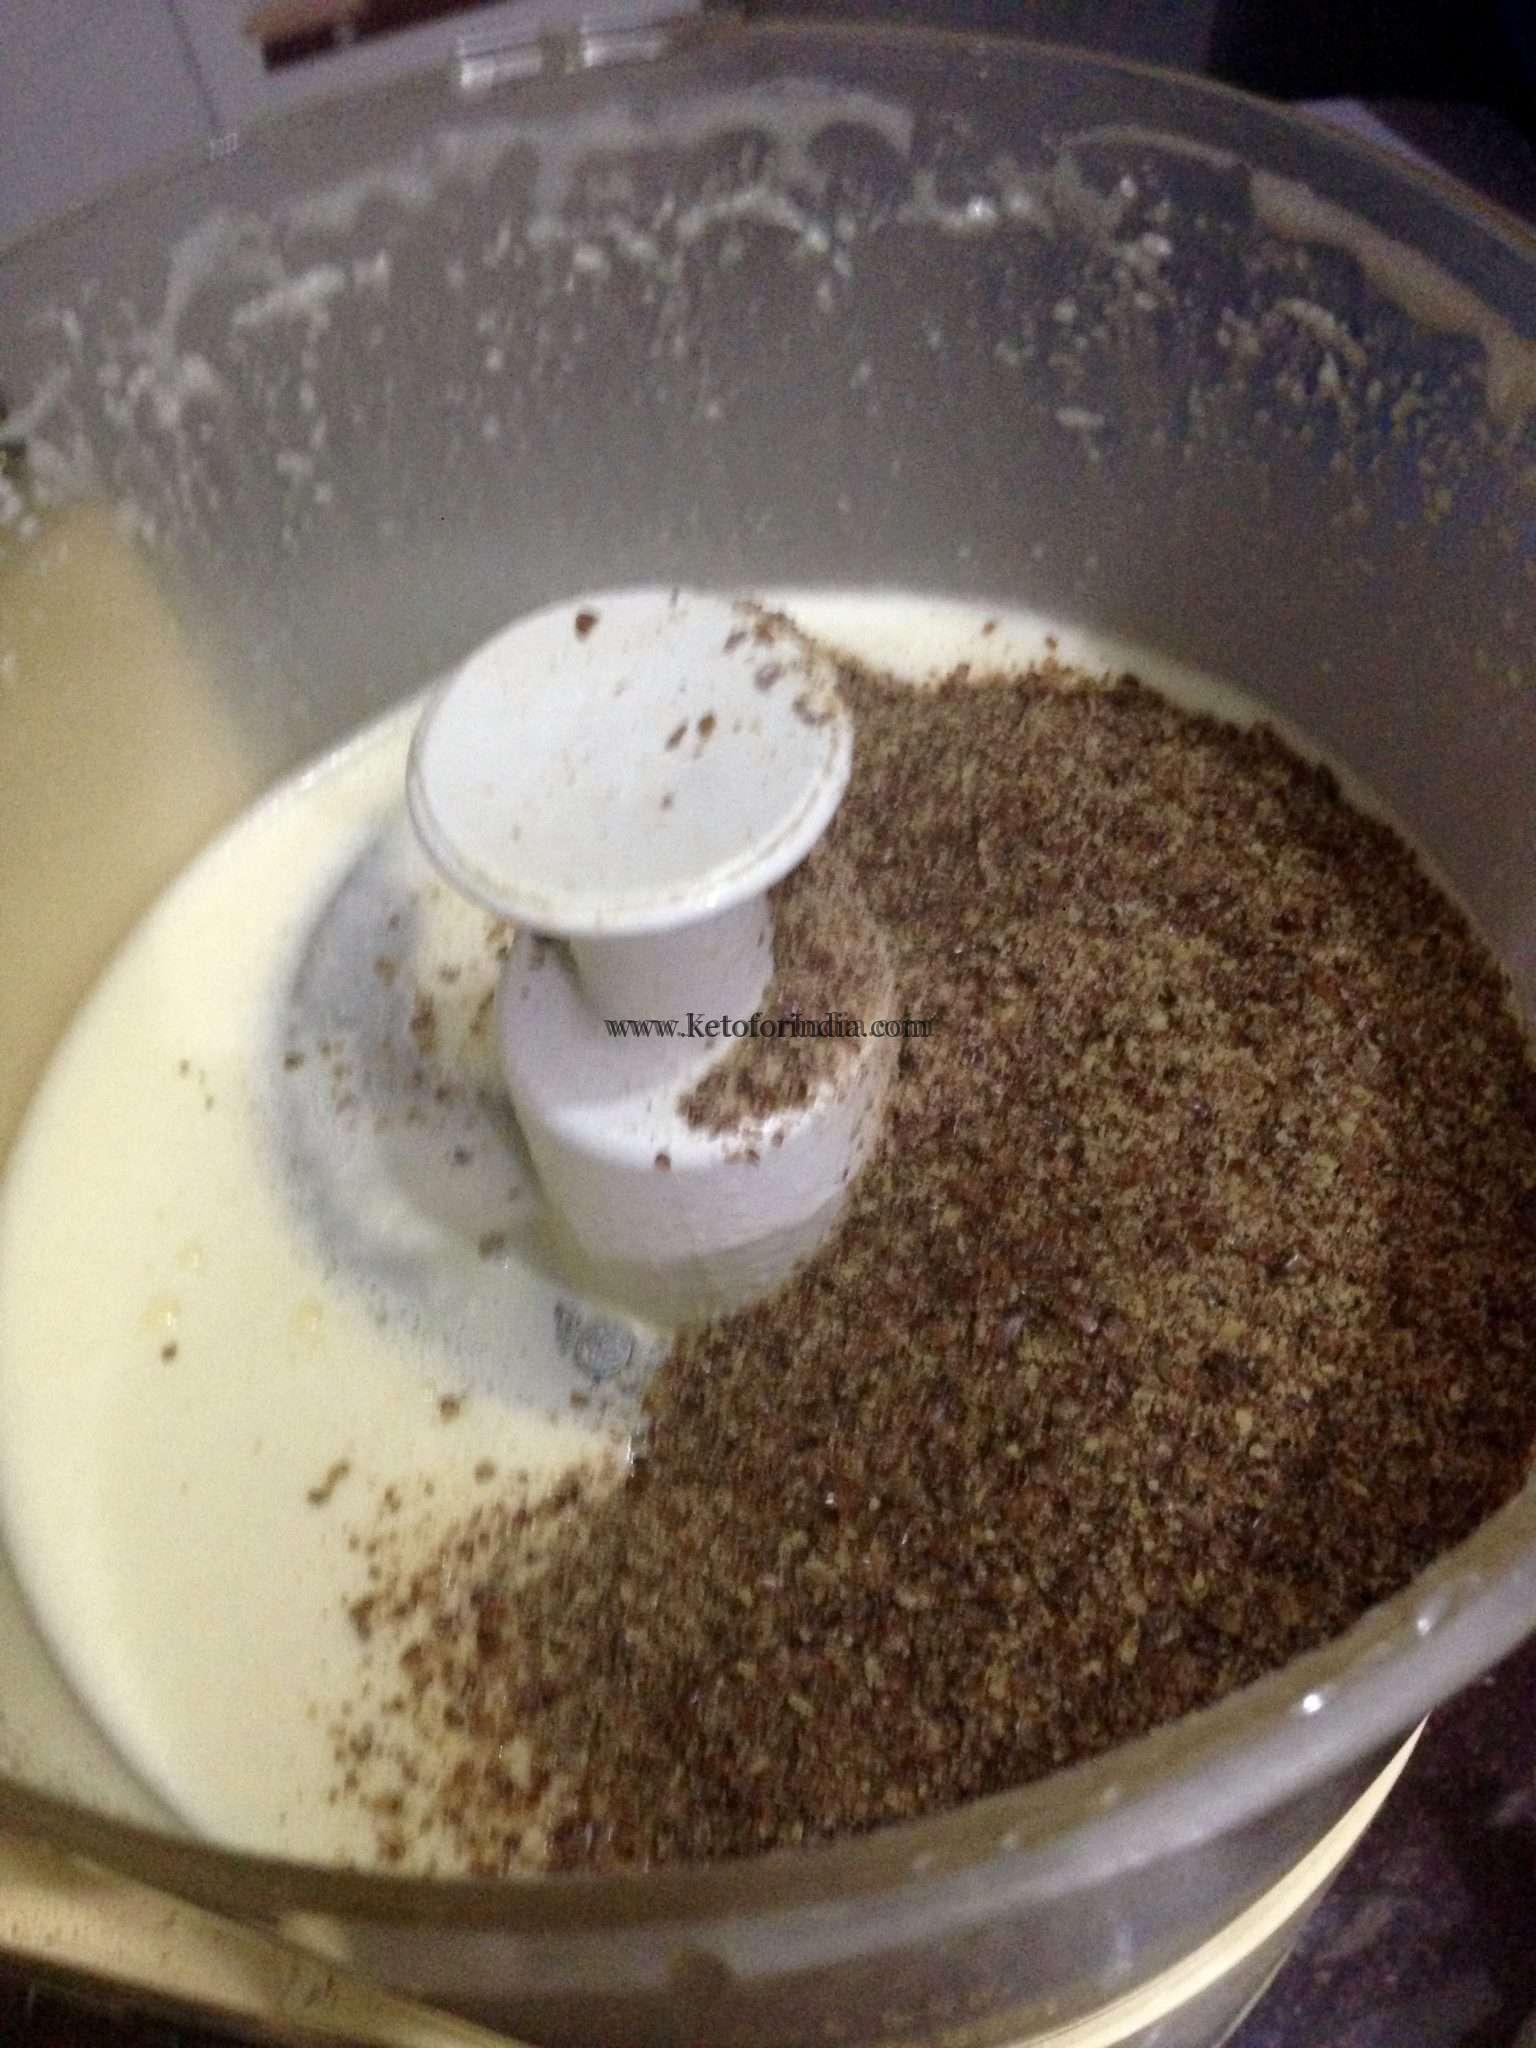 Keto For India: Almond Bread Recipe